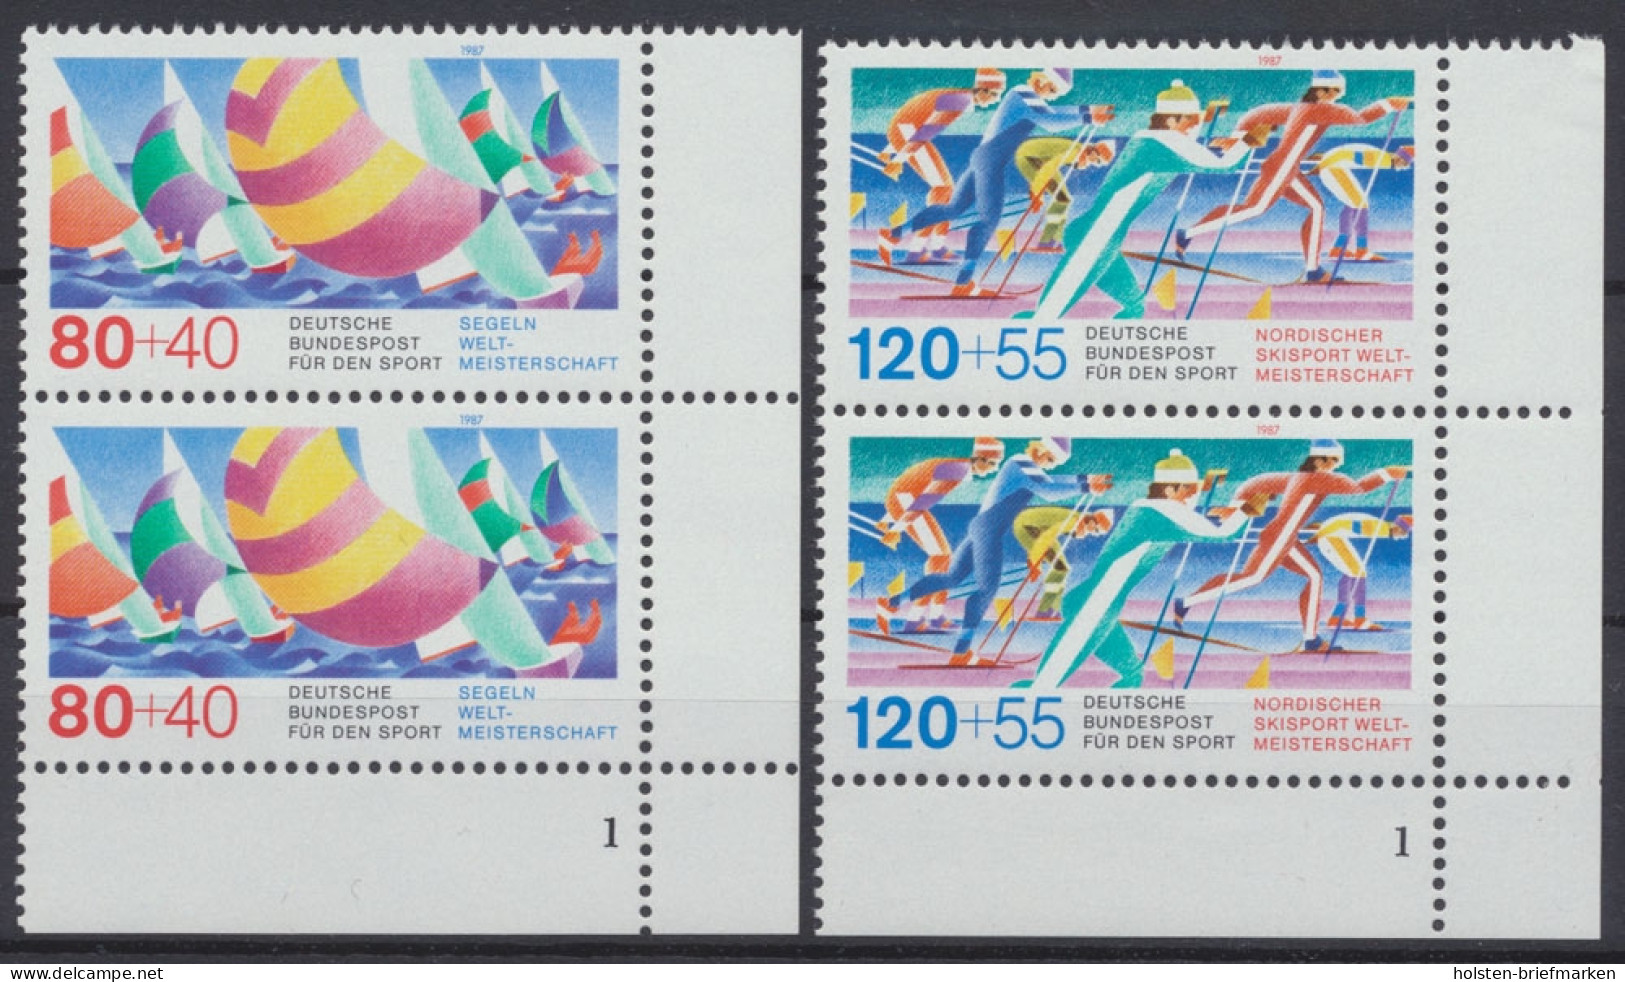 Deutschland (BRD), MiNr. 1310-1311, Senkr. Paare, FN 1, Postfrisch - Unused Stamps